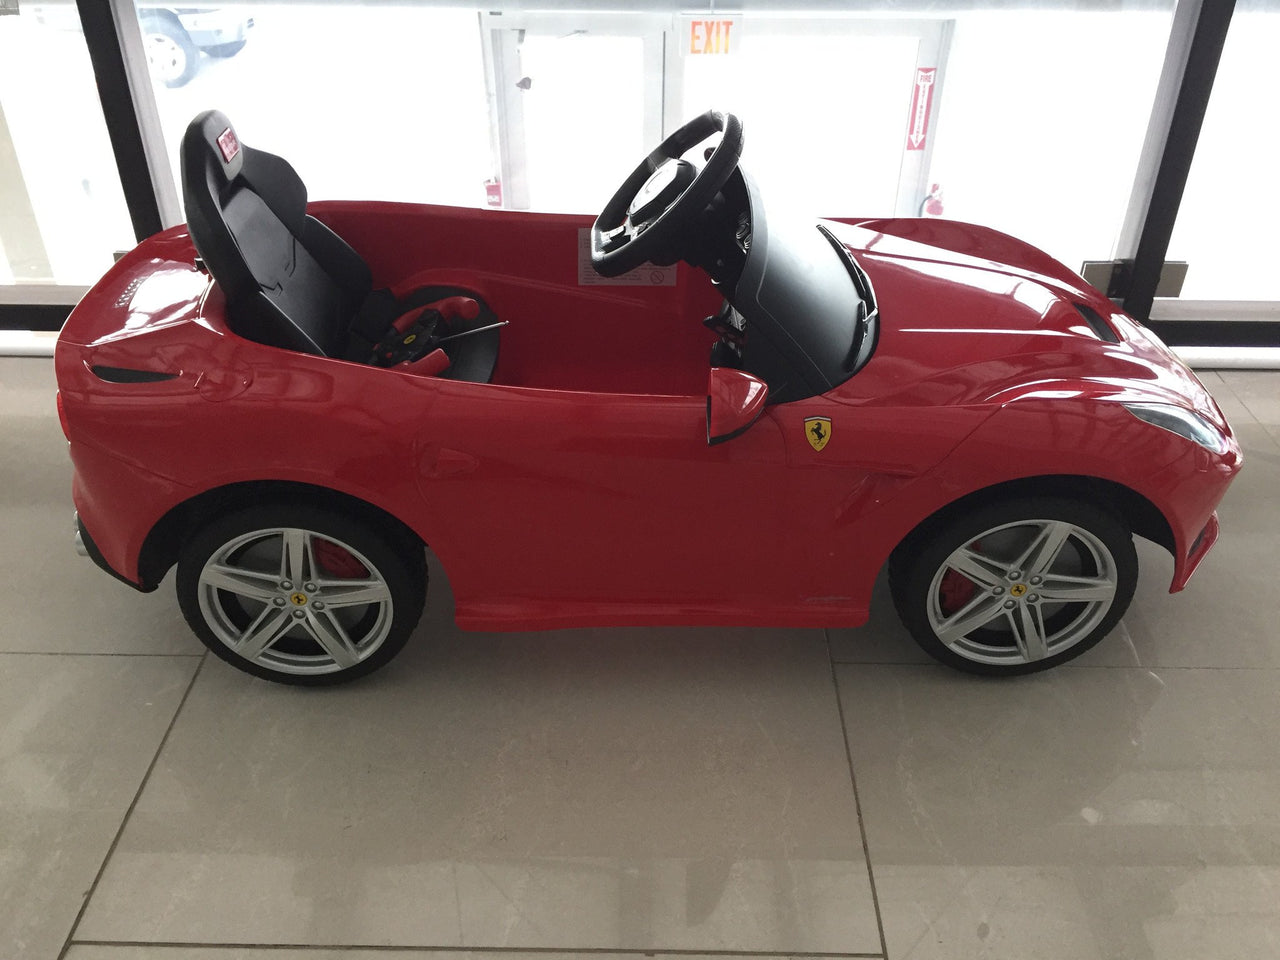 Ferrari F12 Berlinetta Electric Power Wheels Toy Car 12V - Red